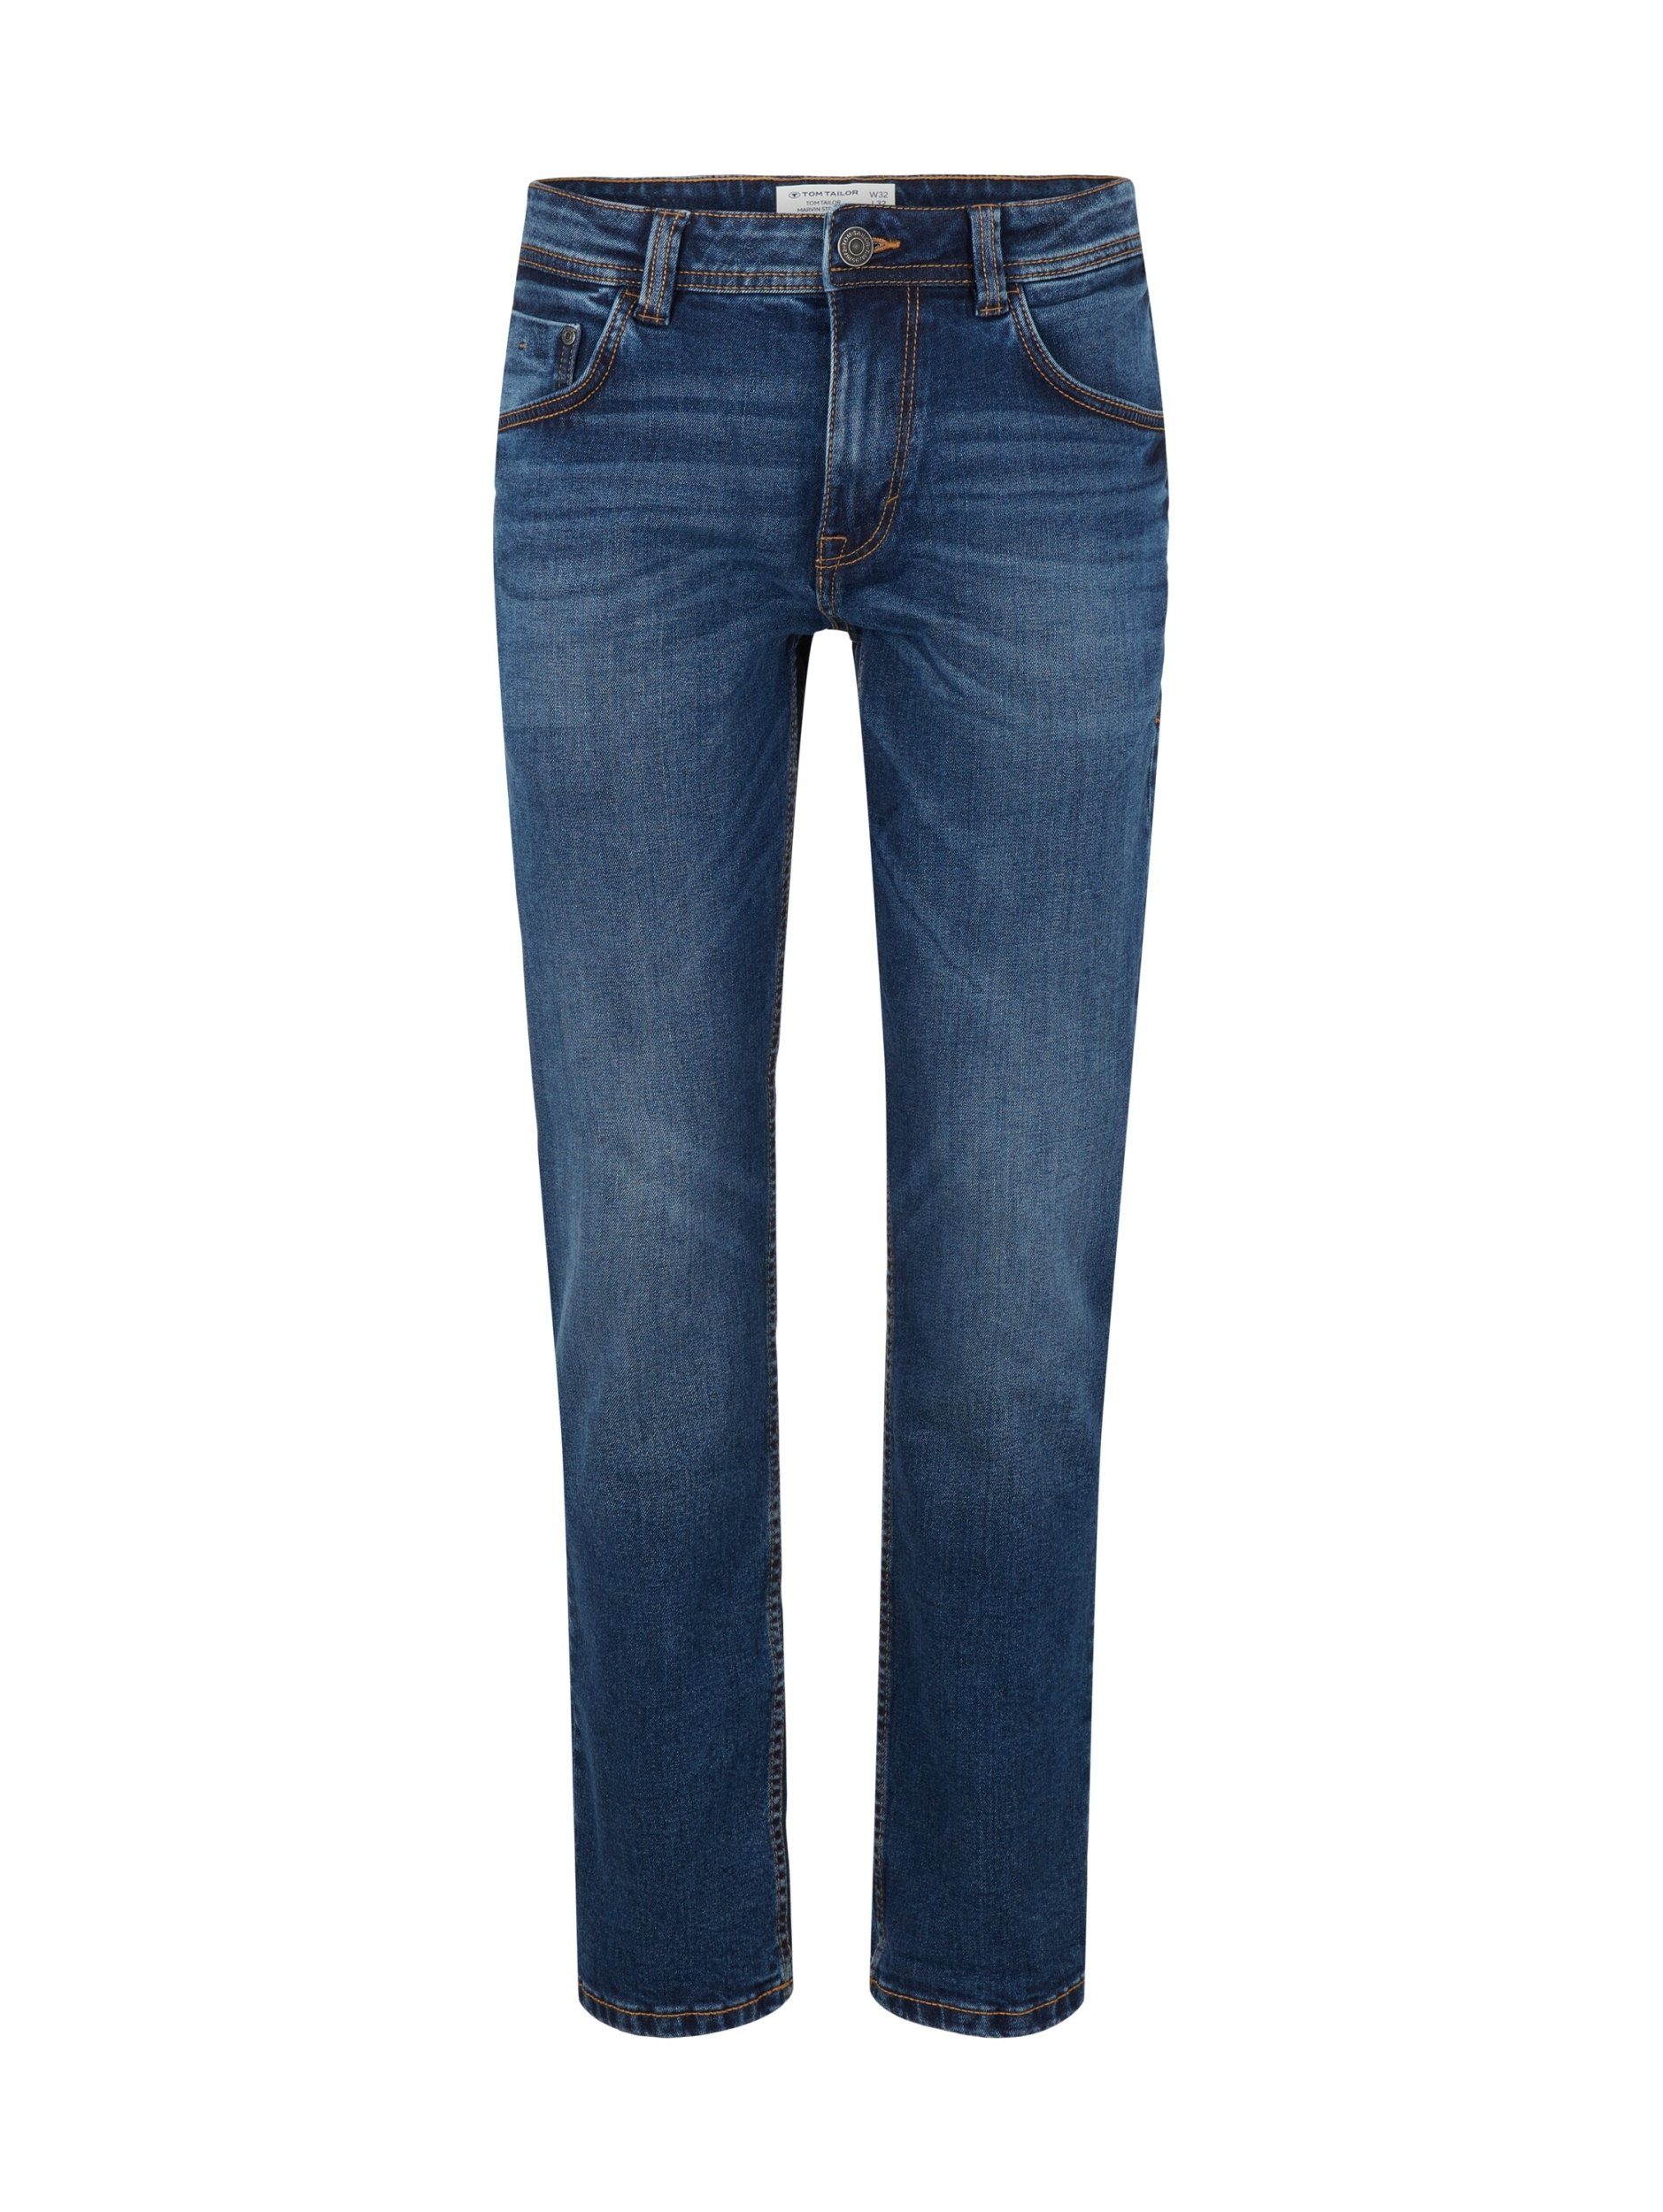 Tom Tailor Herren Stretch Jeans online kaufen | OTTO